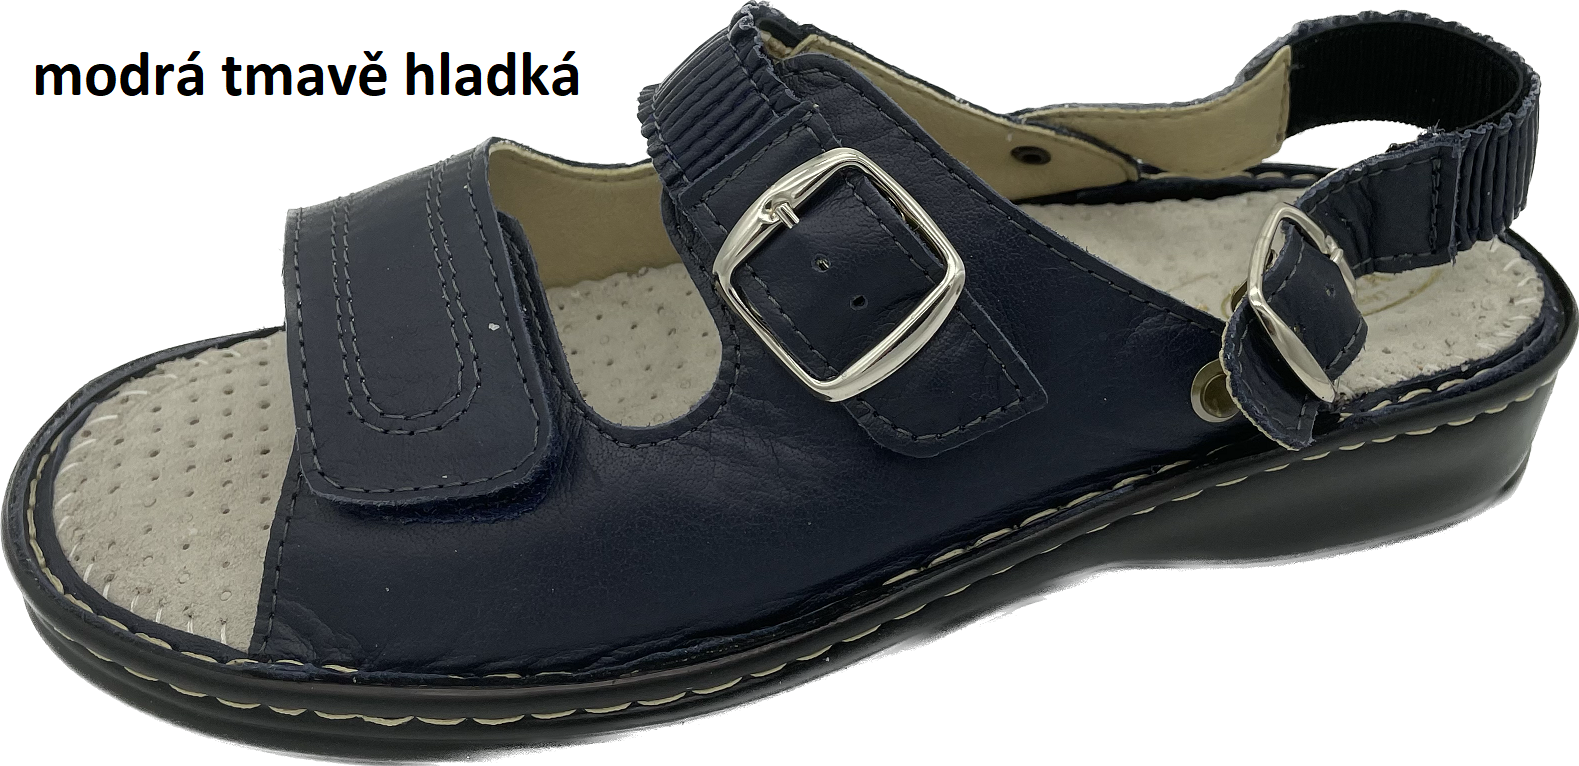 Boty Hanák vzor 305 P - černá podešev Barva usně: modrá tmavě hladká, Velikosti obuvi: 35